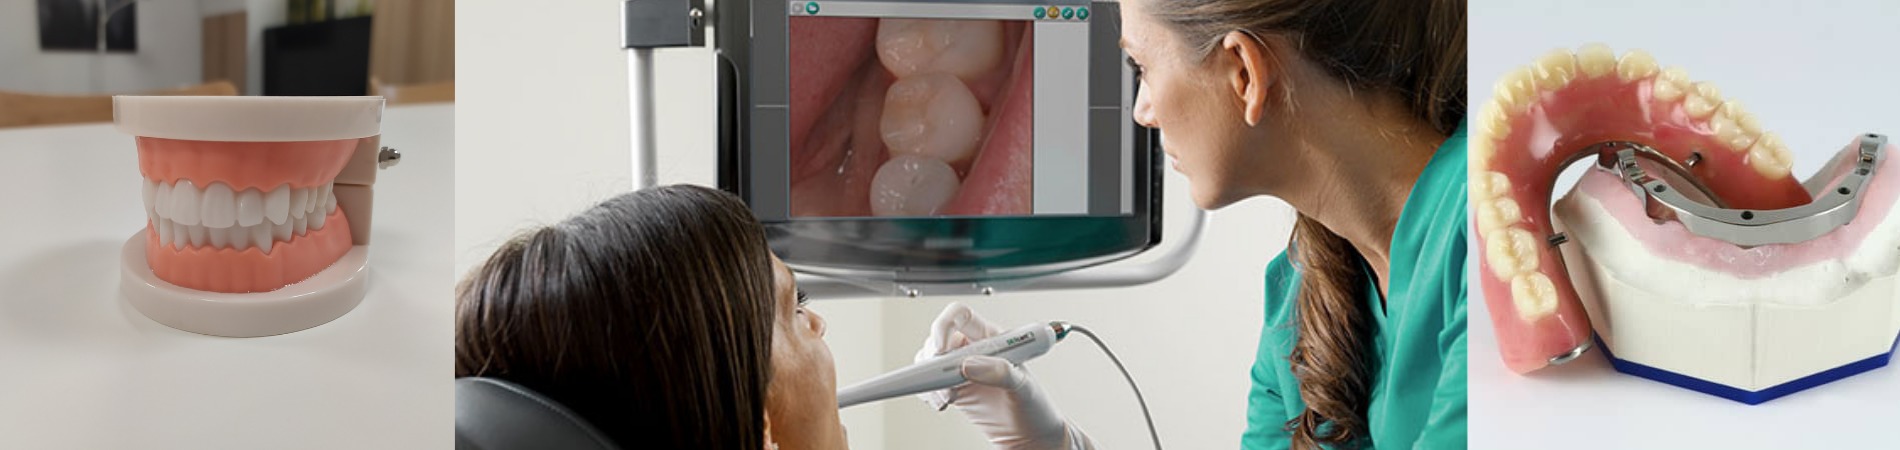 5-nouvelles-technologies-dentaires-revolutionnaires - Installation de Cabinet Dentaire - accompagnement clé en main l KONIBO